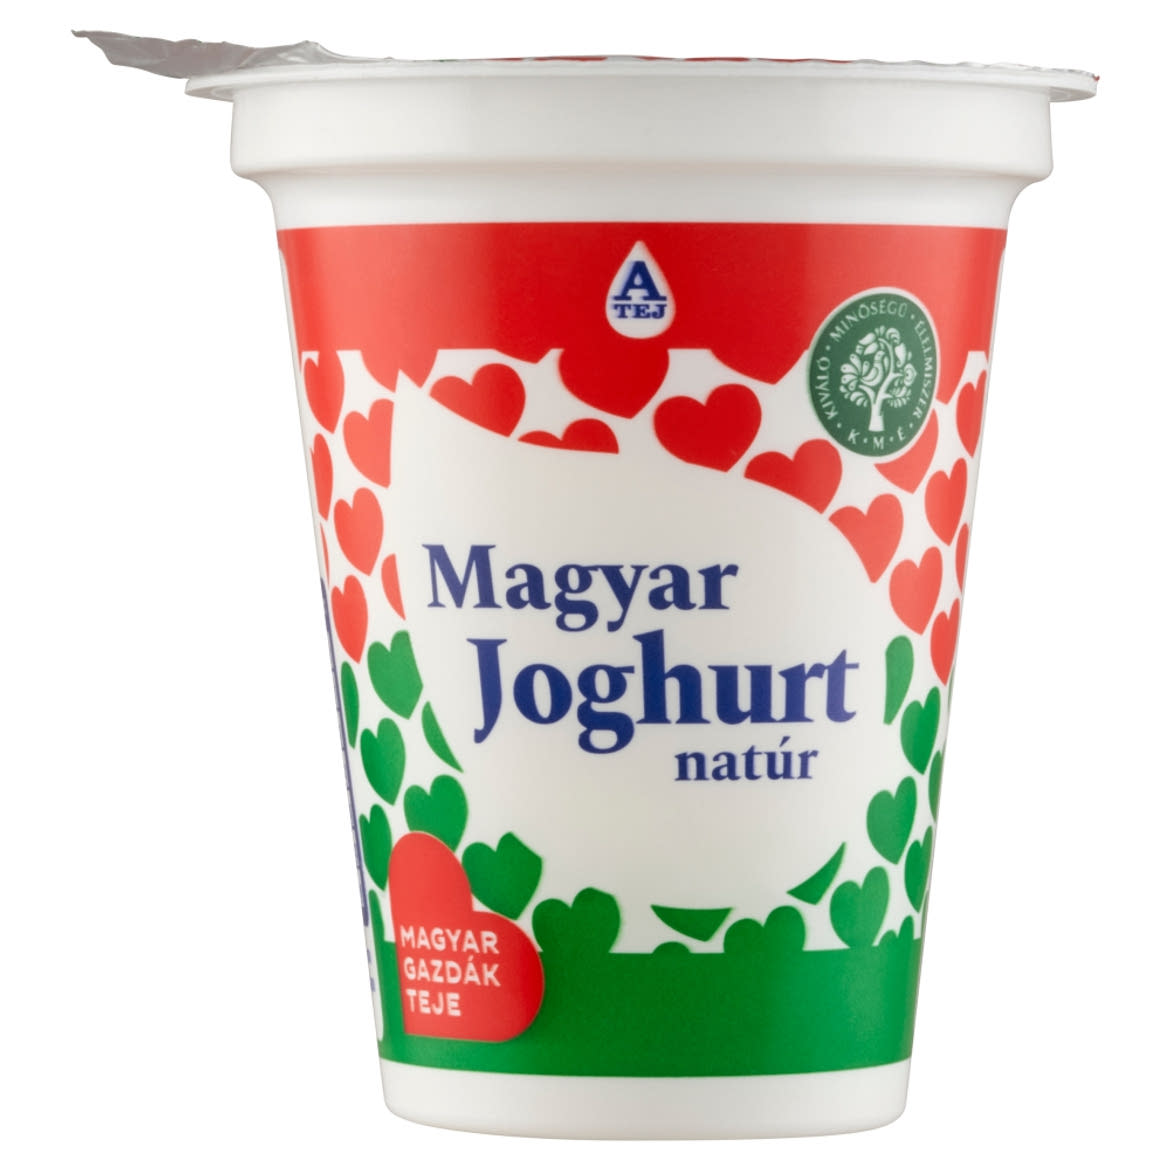 Magyar Joghurt natúr joghurt